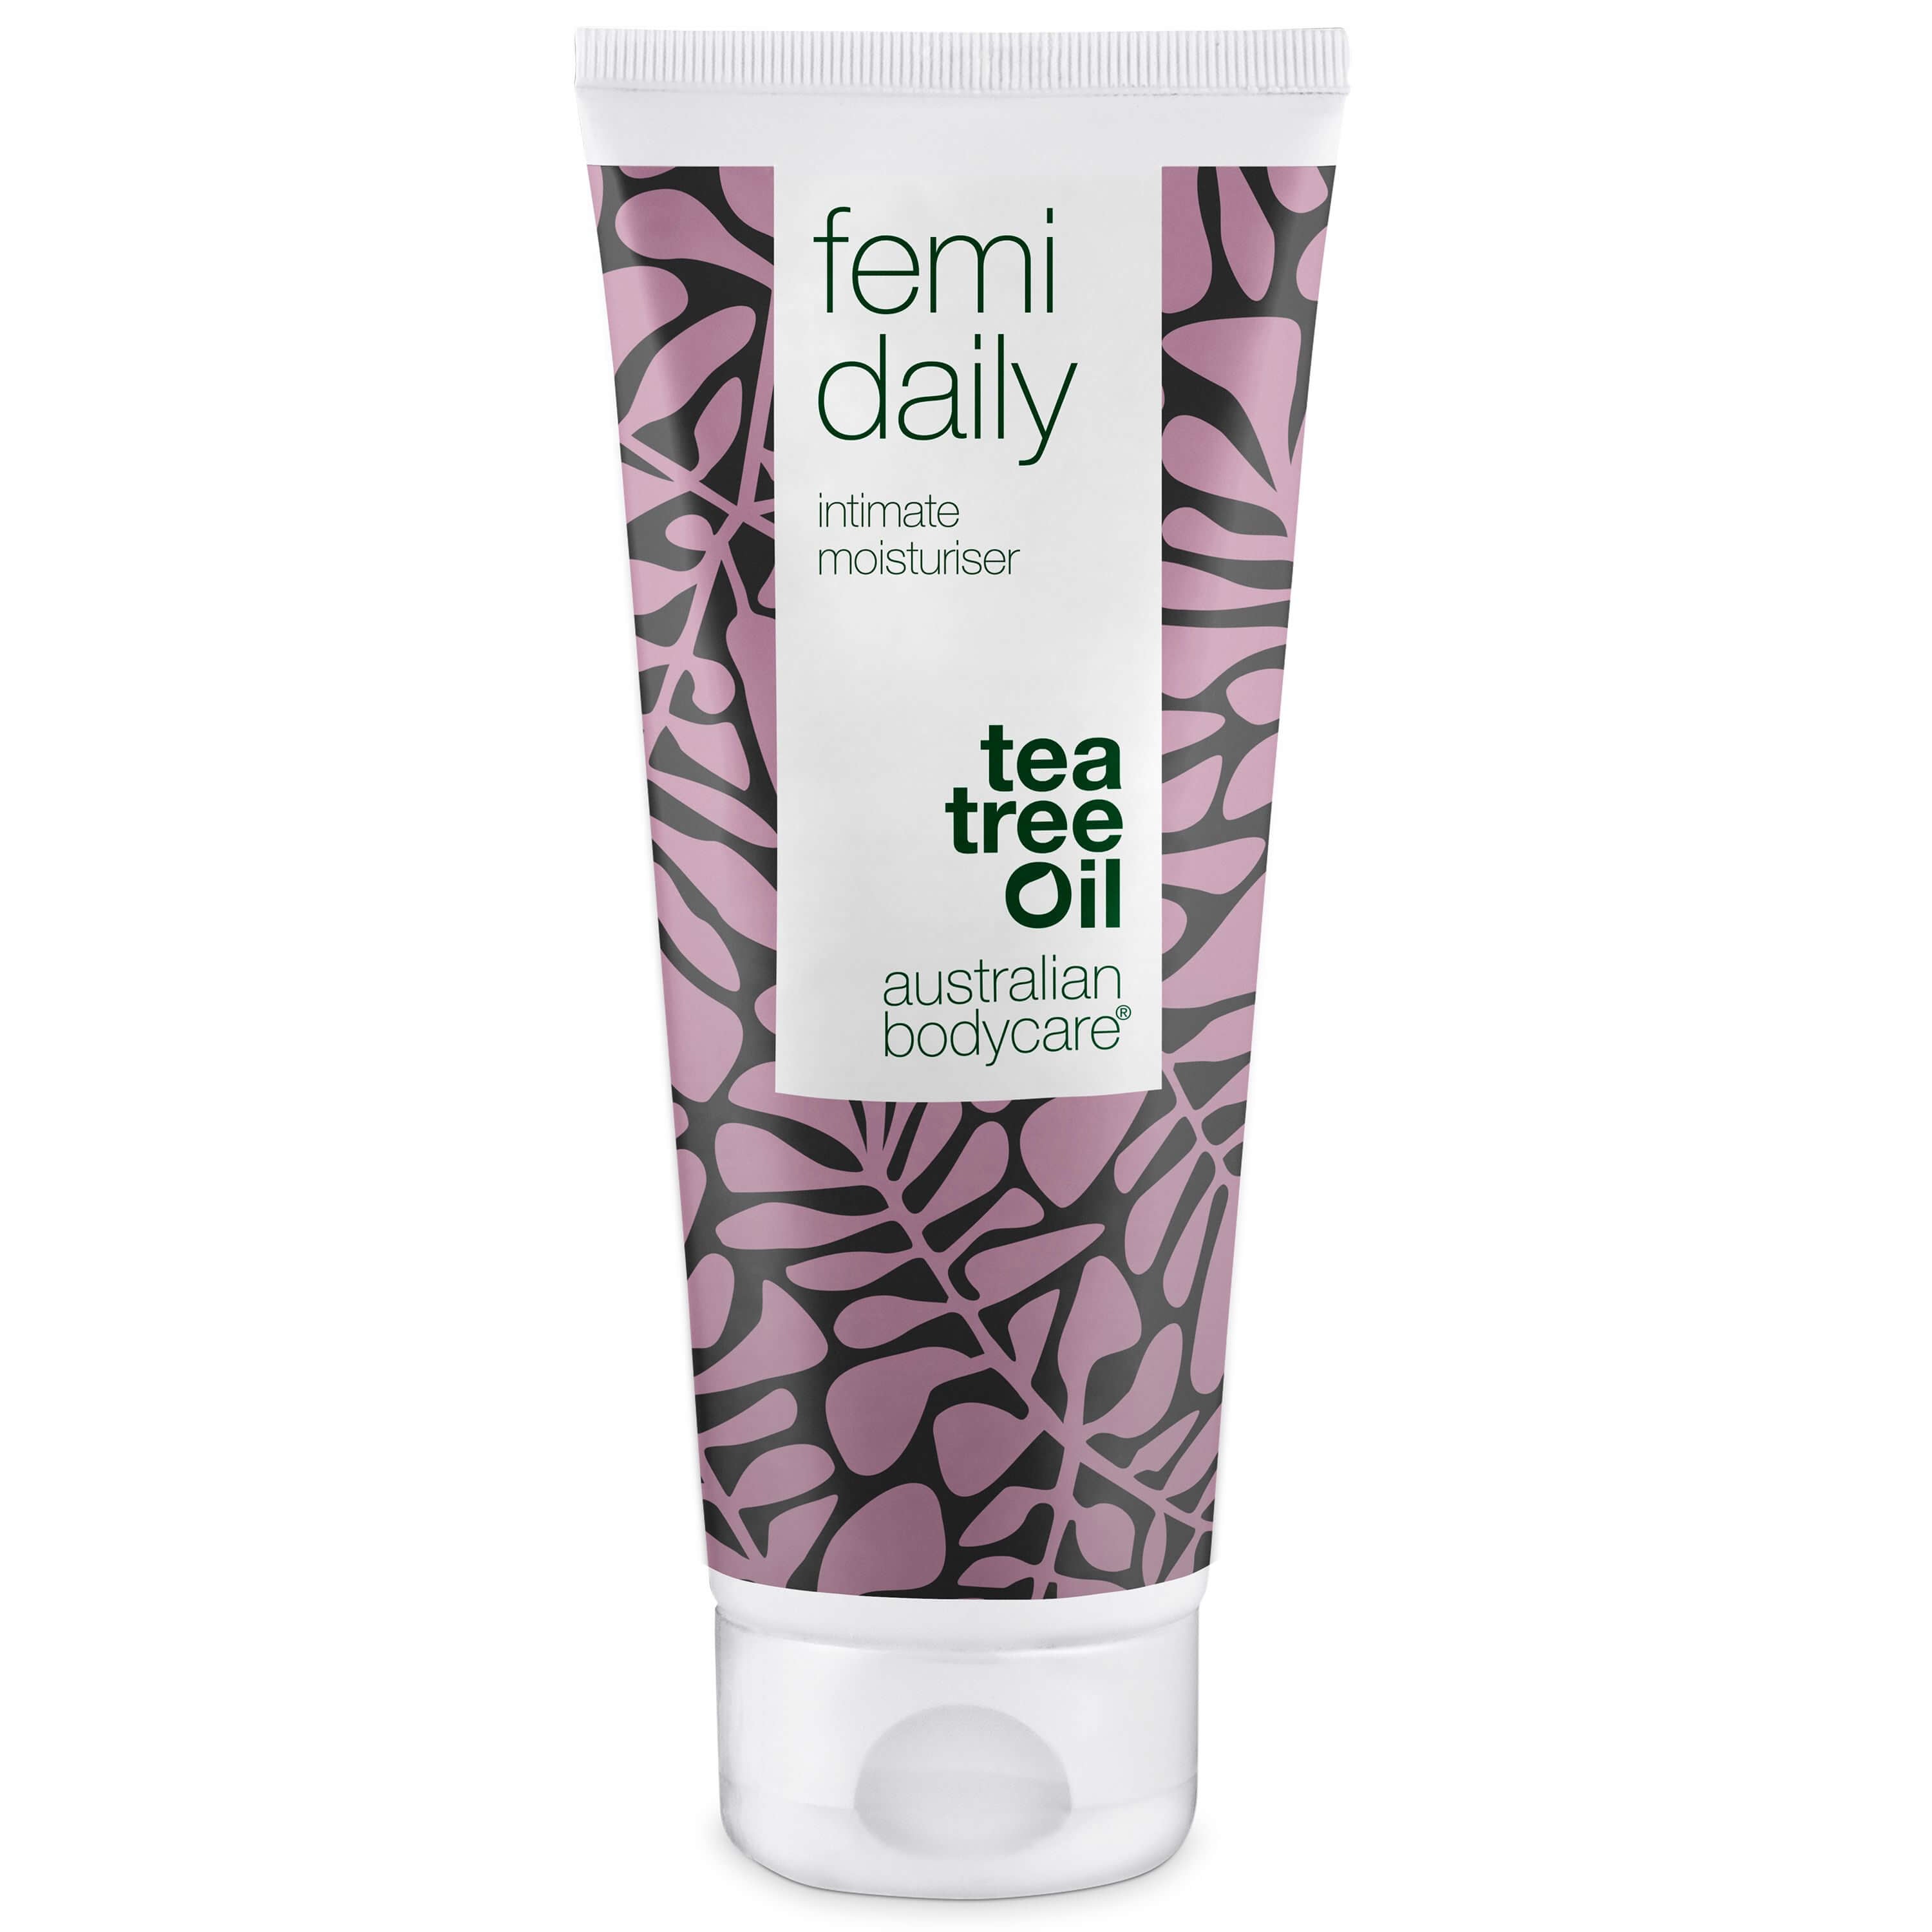 Se Femi Daily intim gel mod kløe, lugt og tørhed - Intimgel til daglig pleje af intimproblemer - 100 ml - 139,95,- hos Australian Bodycare